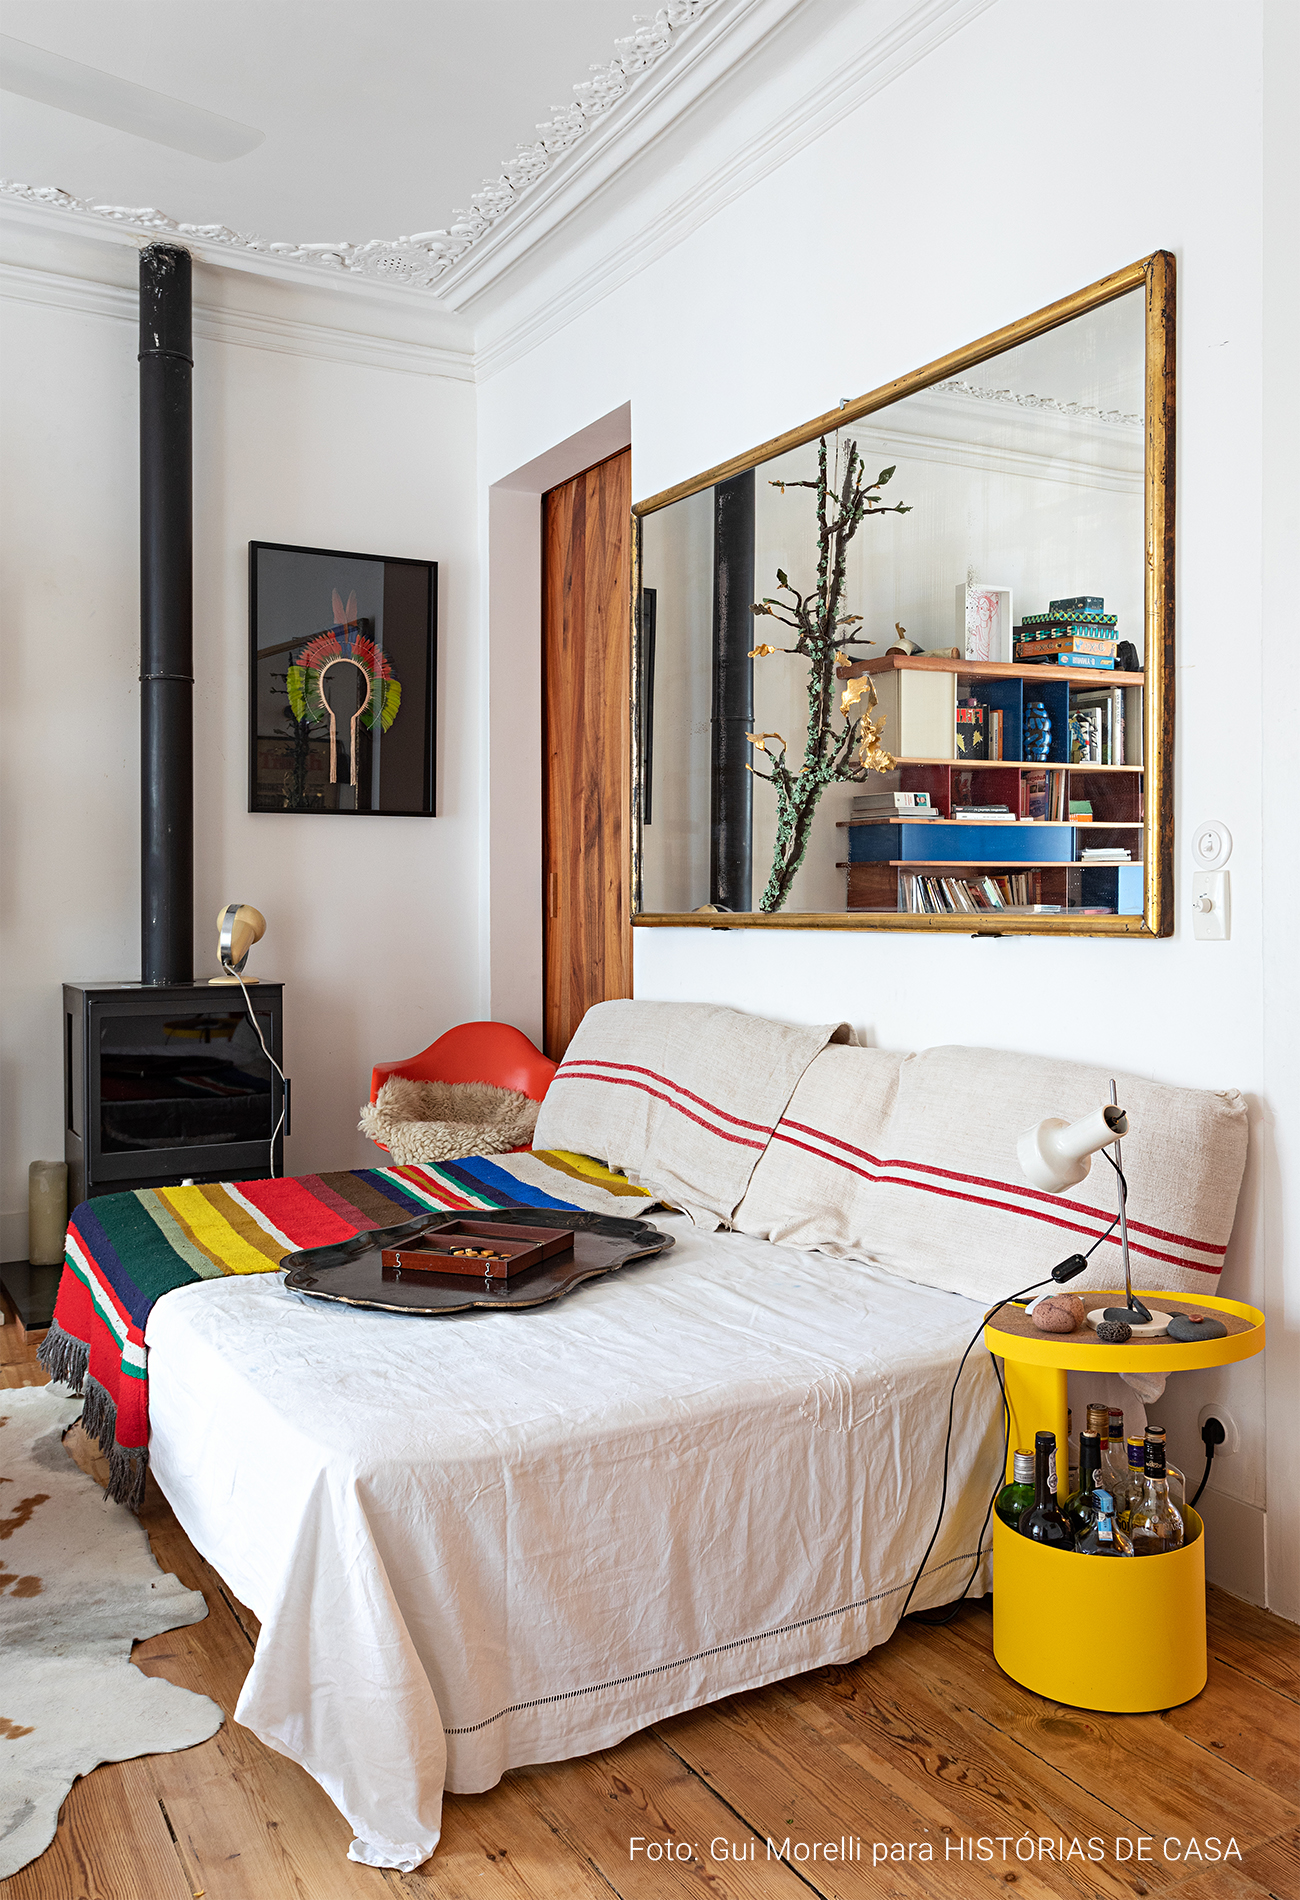 Apartamento em Portugal com decoração colorida e uso criativo dos móveis e objetos